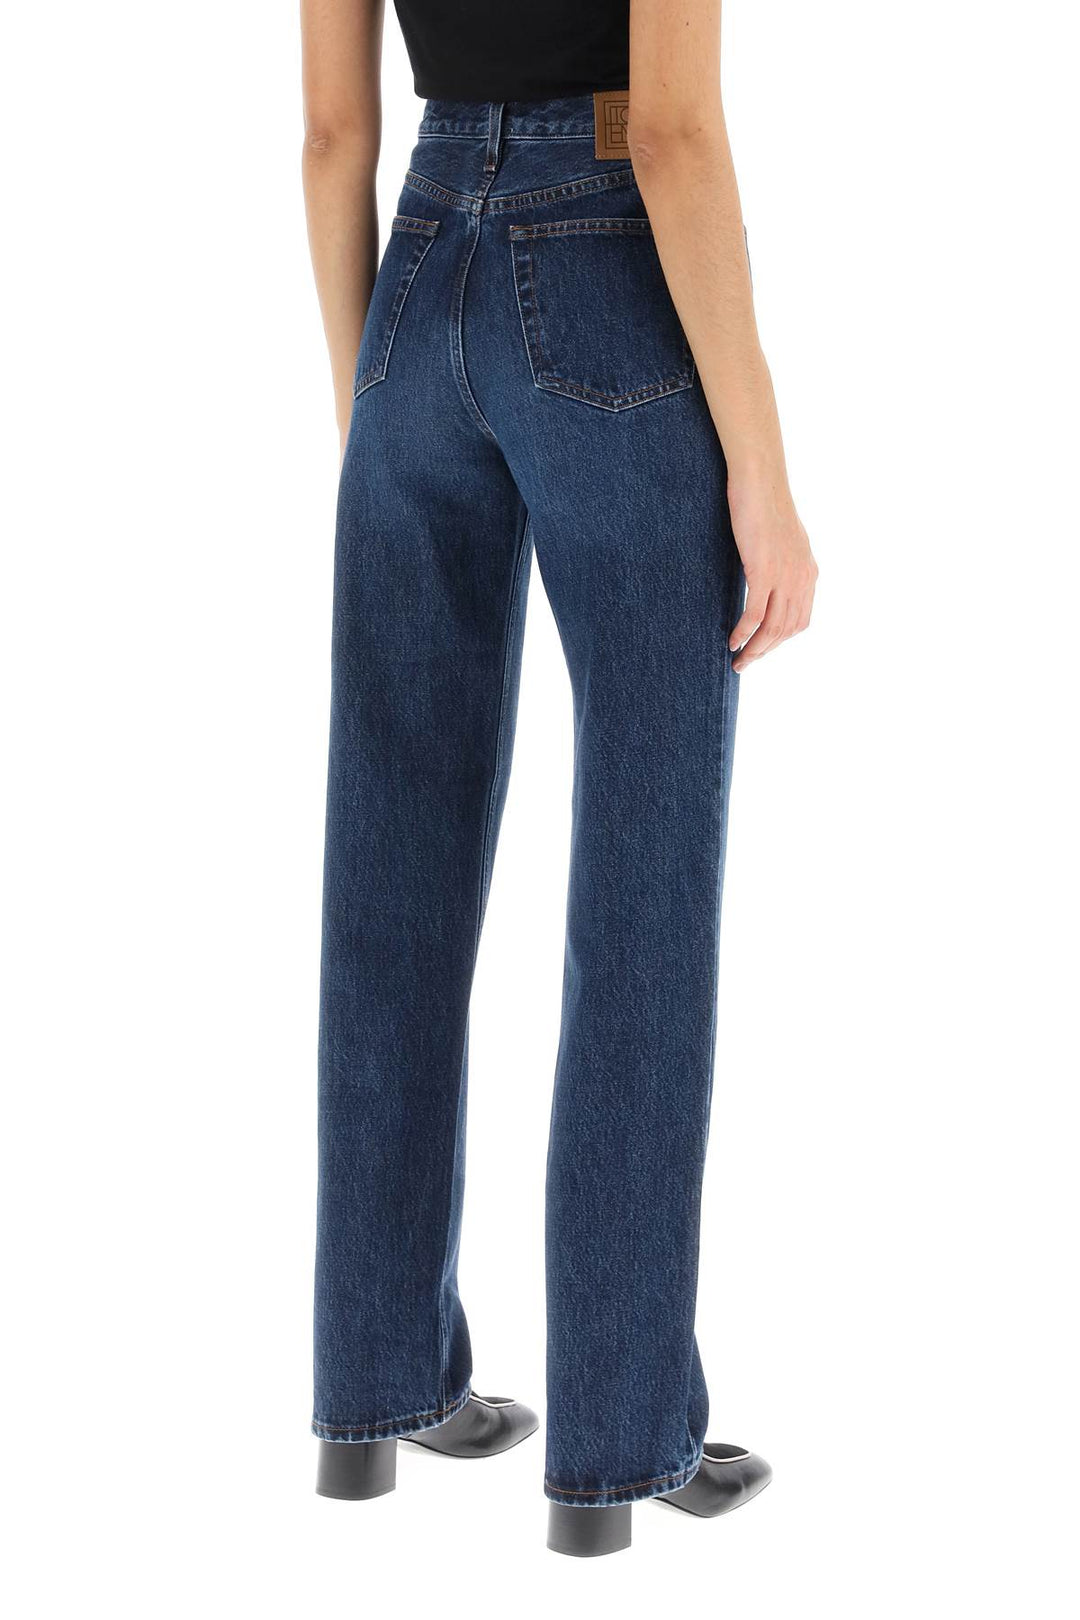 Toteme Organic Denim Classic Cut Jeans   Blu